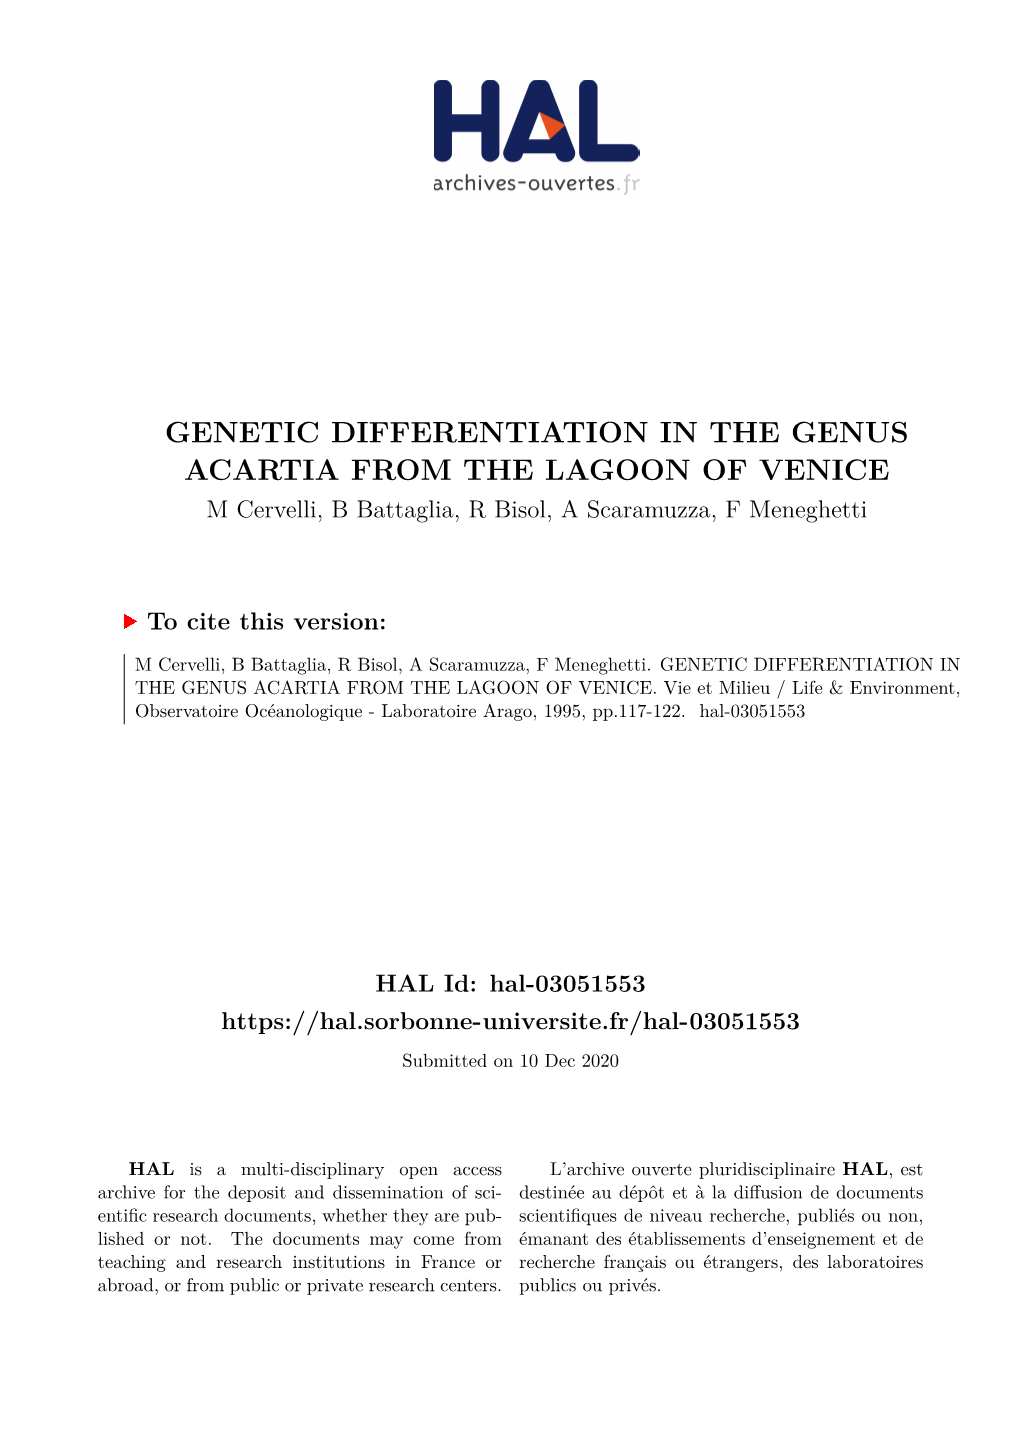 GENETIC DIFFERENTIATION in the GENUS ACARTIA from the LAGOON of VENICE M Cervelli, B Battaglia, R Bisol, a Scaramuzza, F Meneghetti